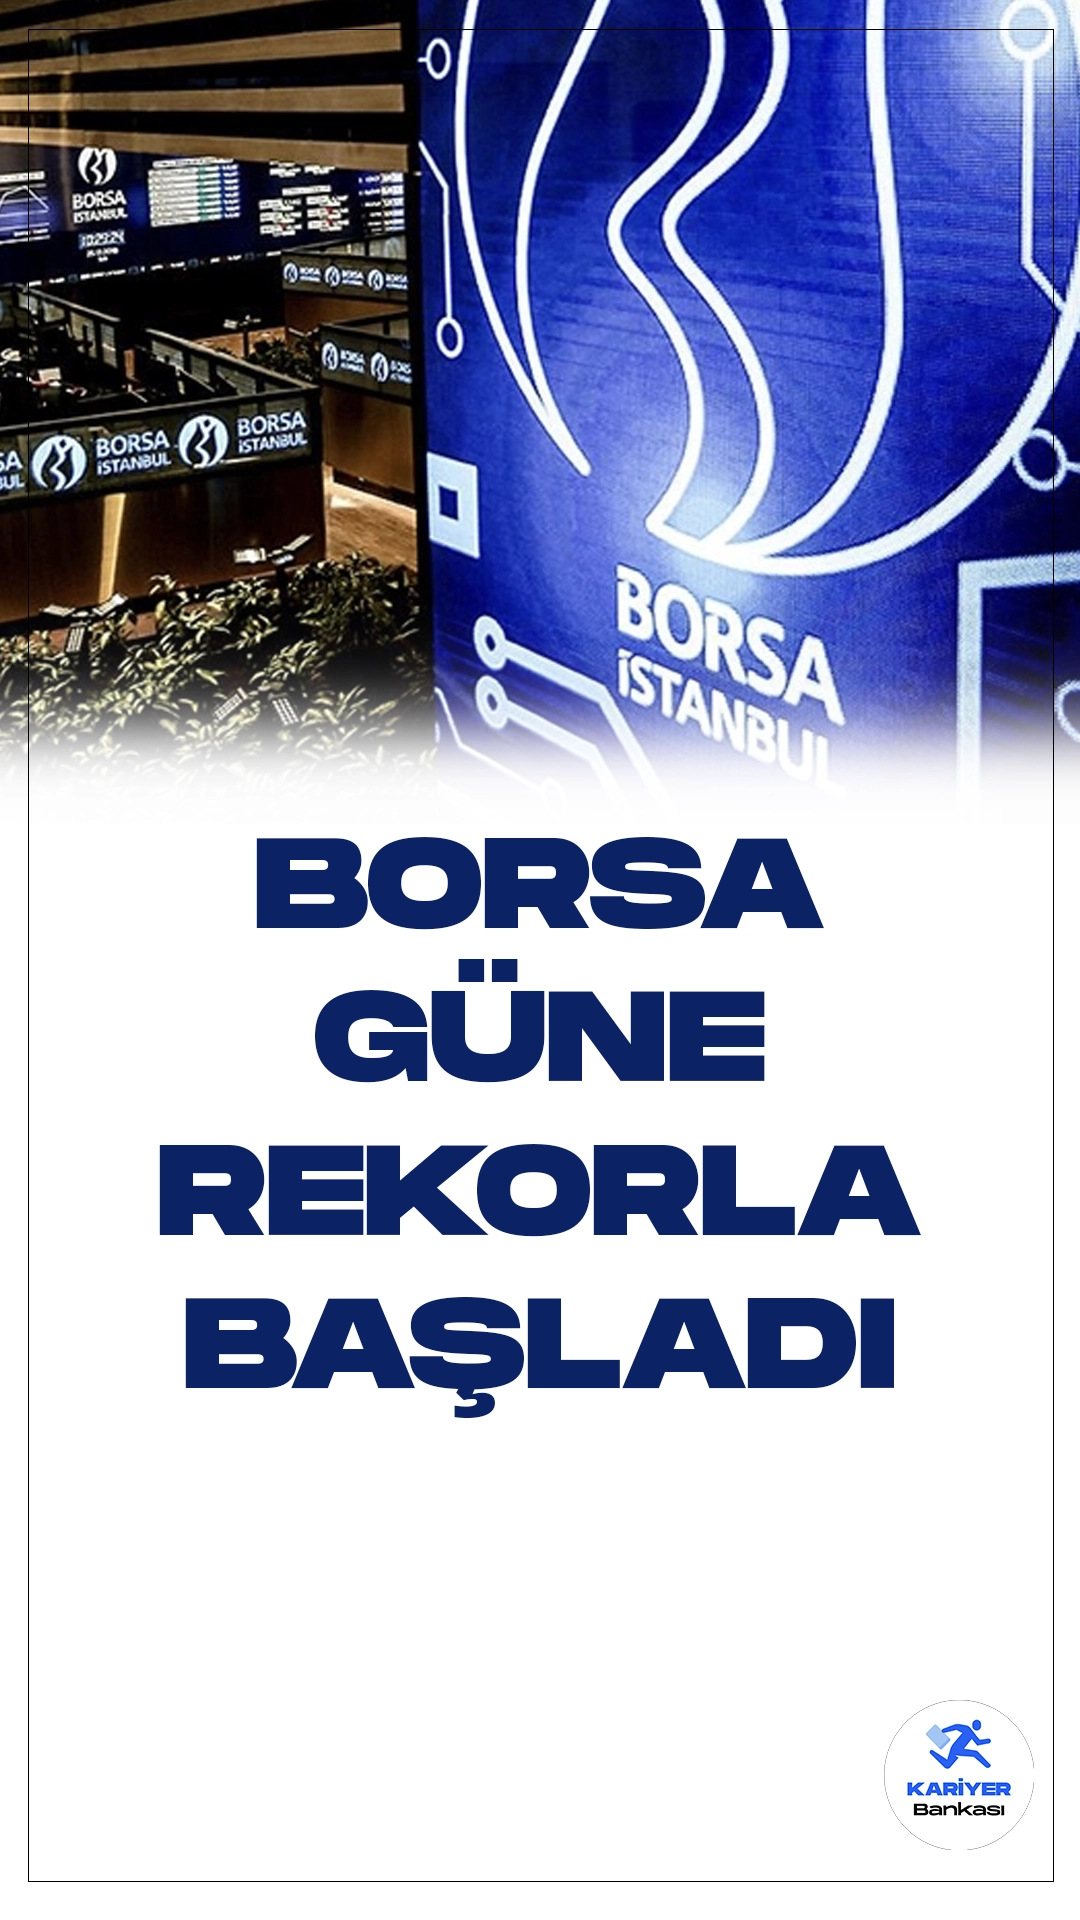 Borsa, tarihi bir rekorla güne başladı. Borsa İstanbul'da BIST 100 endeksi, güne yüzde 0,39'luk bir yükselişle tüm zamanların en yüksek seviyesi olan 8.810,69 puandan açıldı.